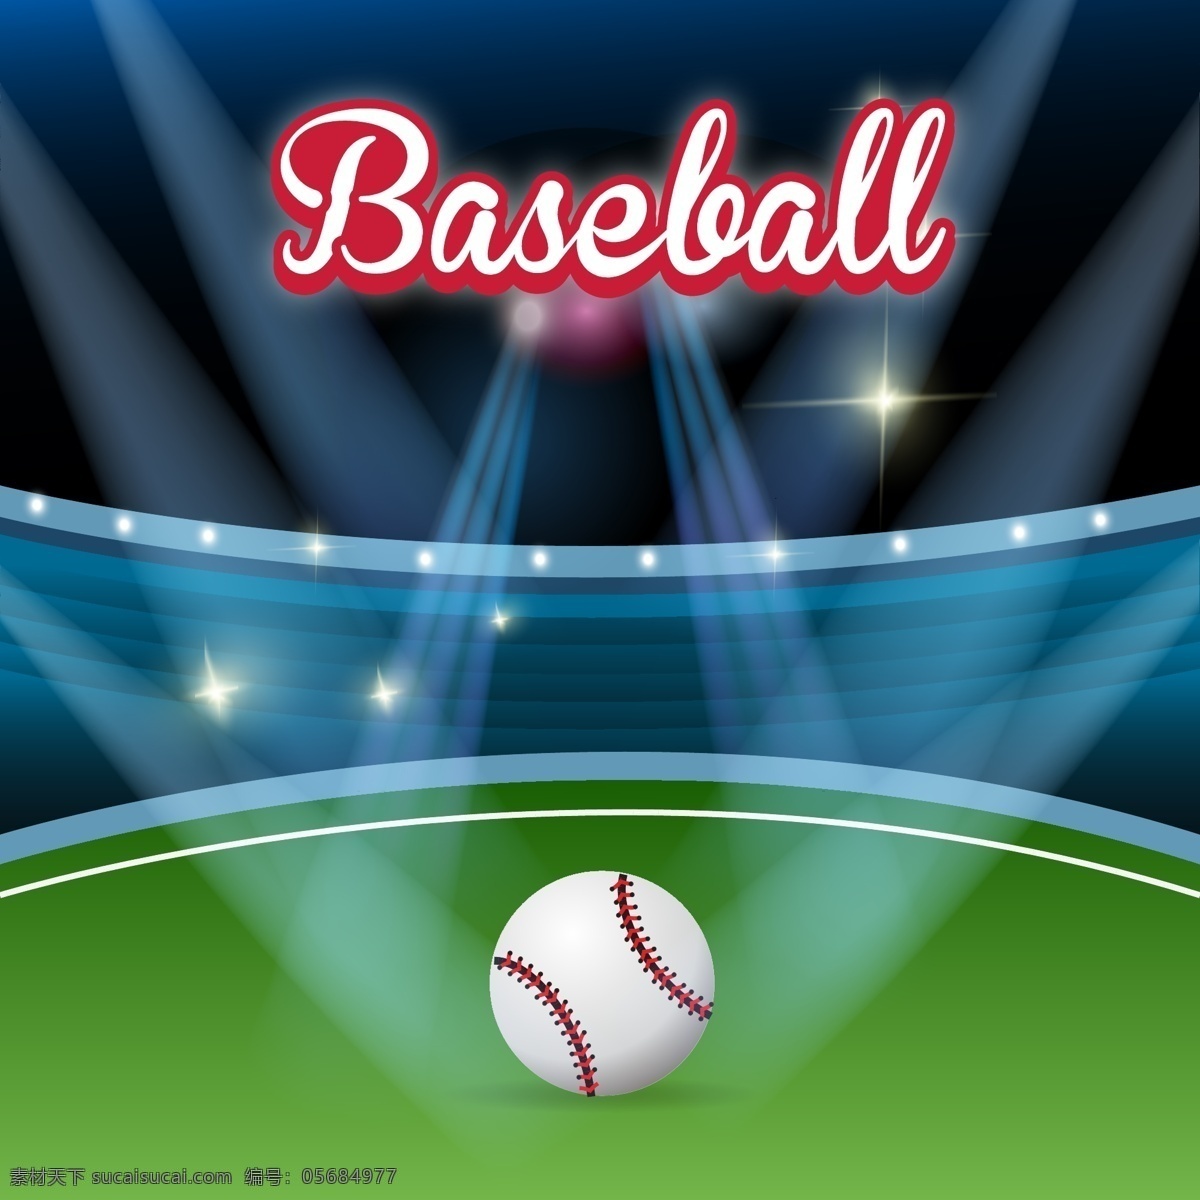 棒球海报 棒球 棒球帽 棒球帽子 棒球场 运动 运动装备 文化艺术 体育运动 矢量 矢量素材